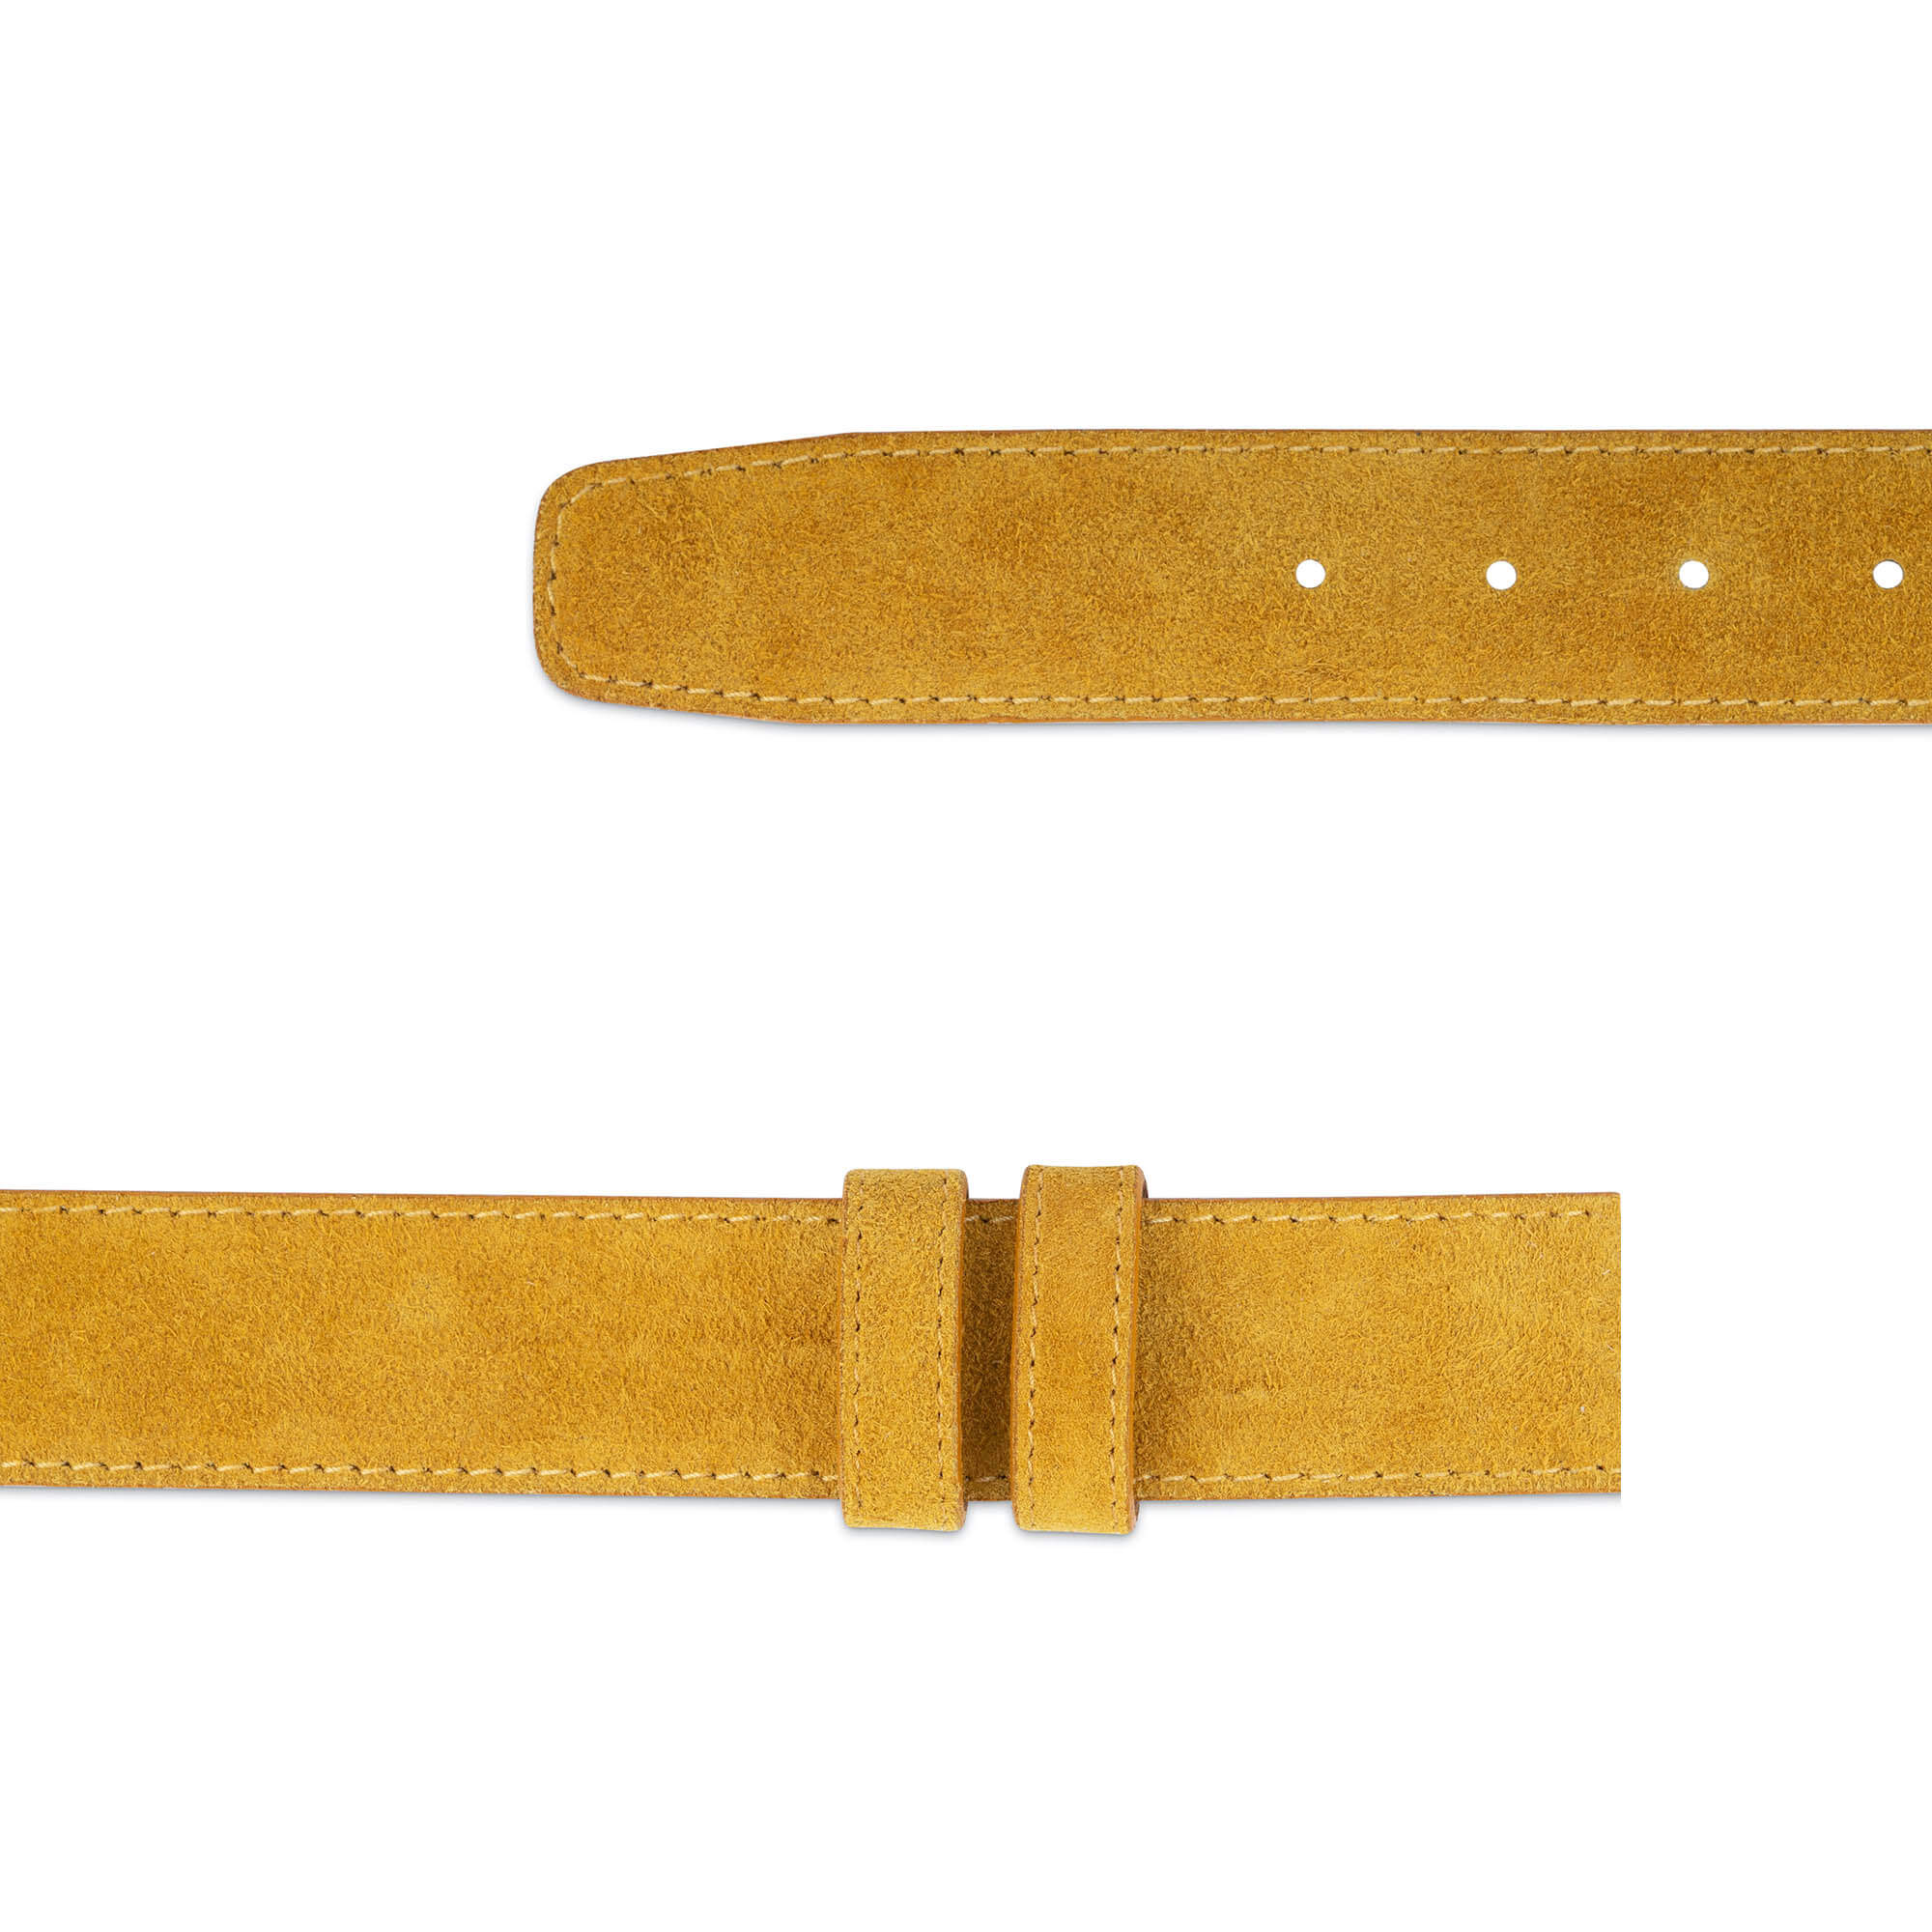 Buy 1.5 Inch Camel Suede Leather Belt Strap | LeatherBeltsOnline.com